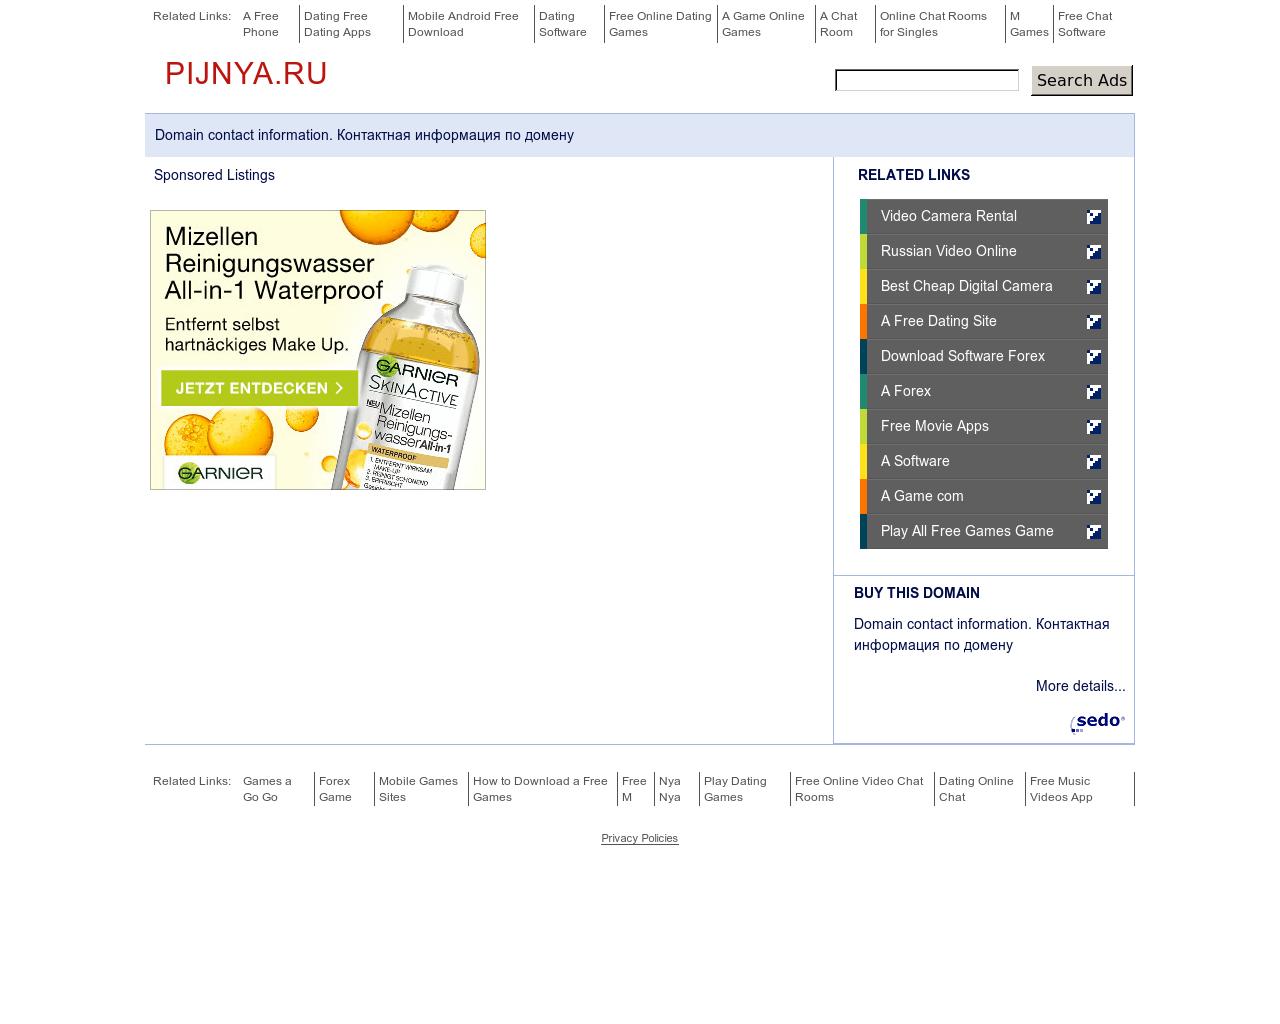 Изображение сайта pijnya.ru в разрешении 1280x1024